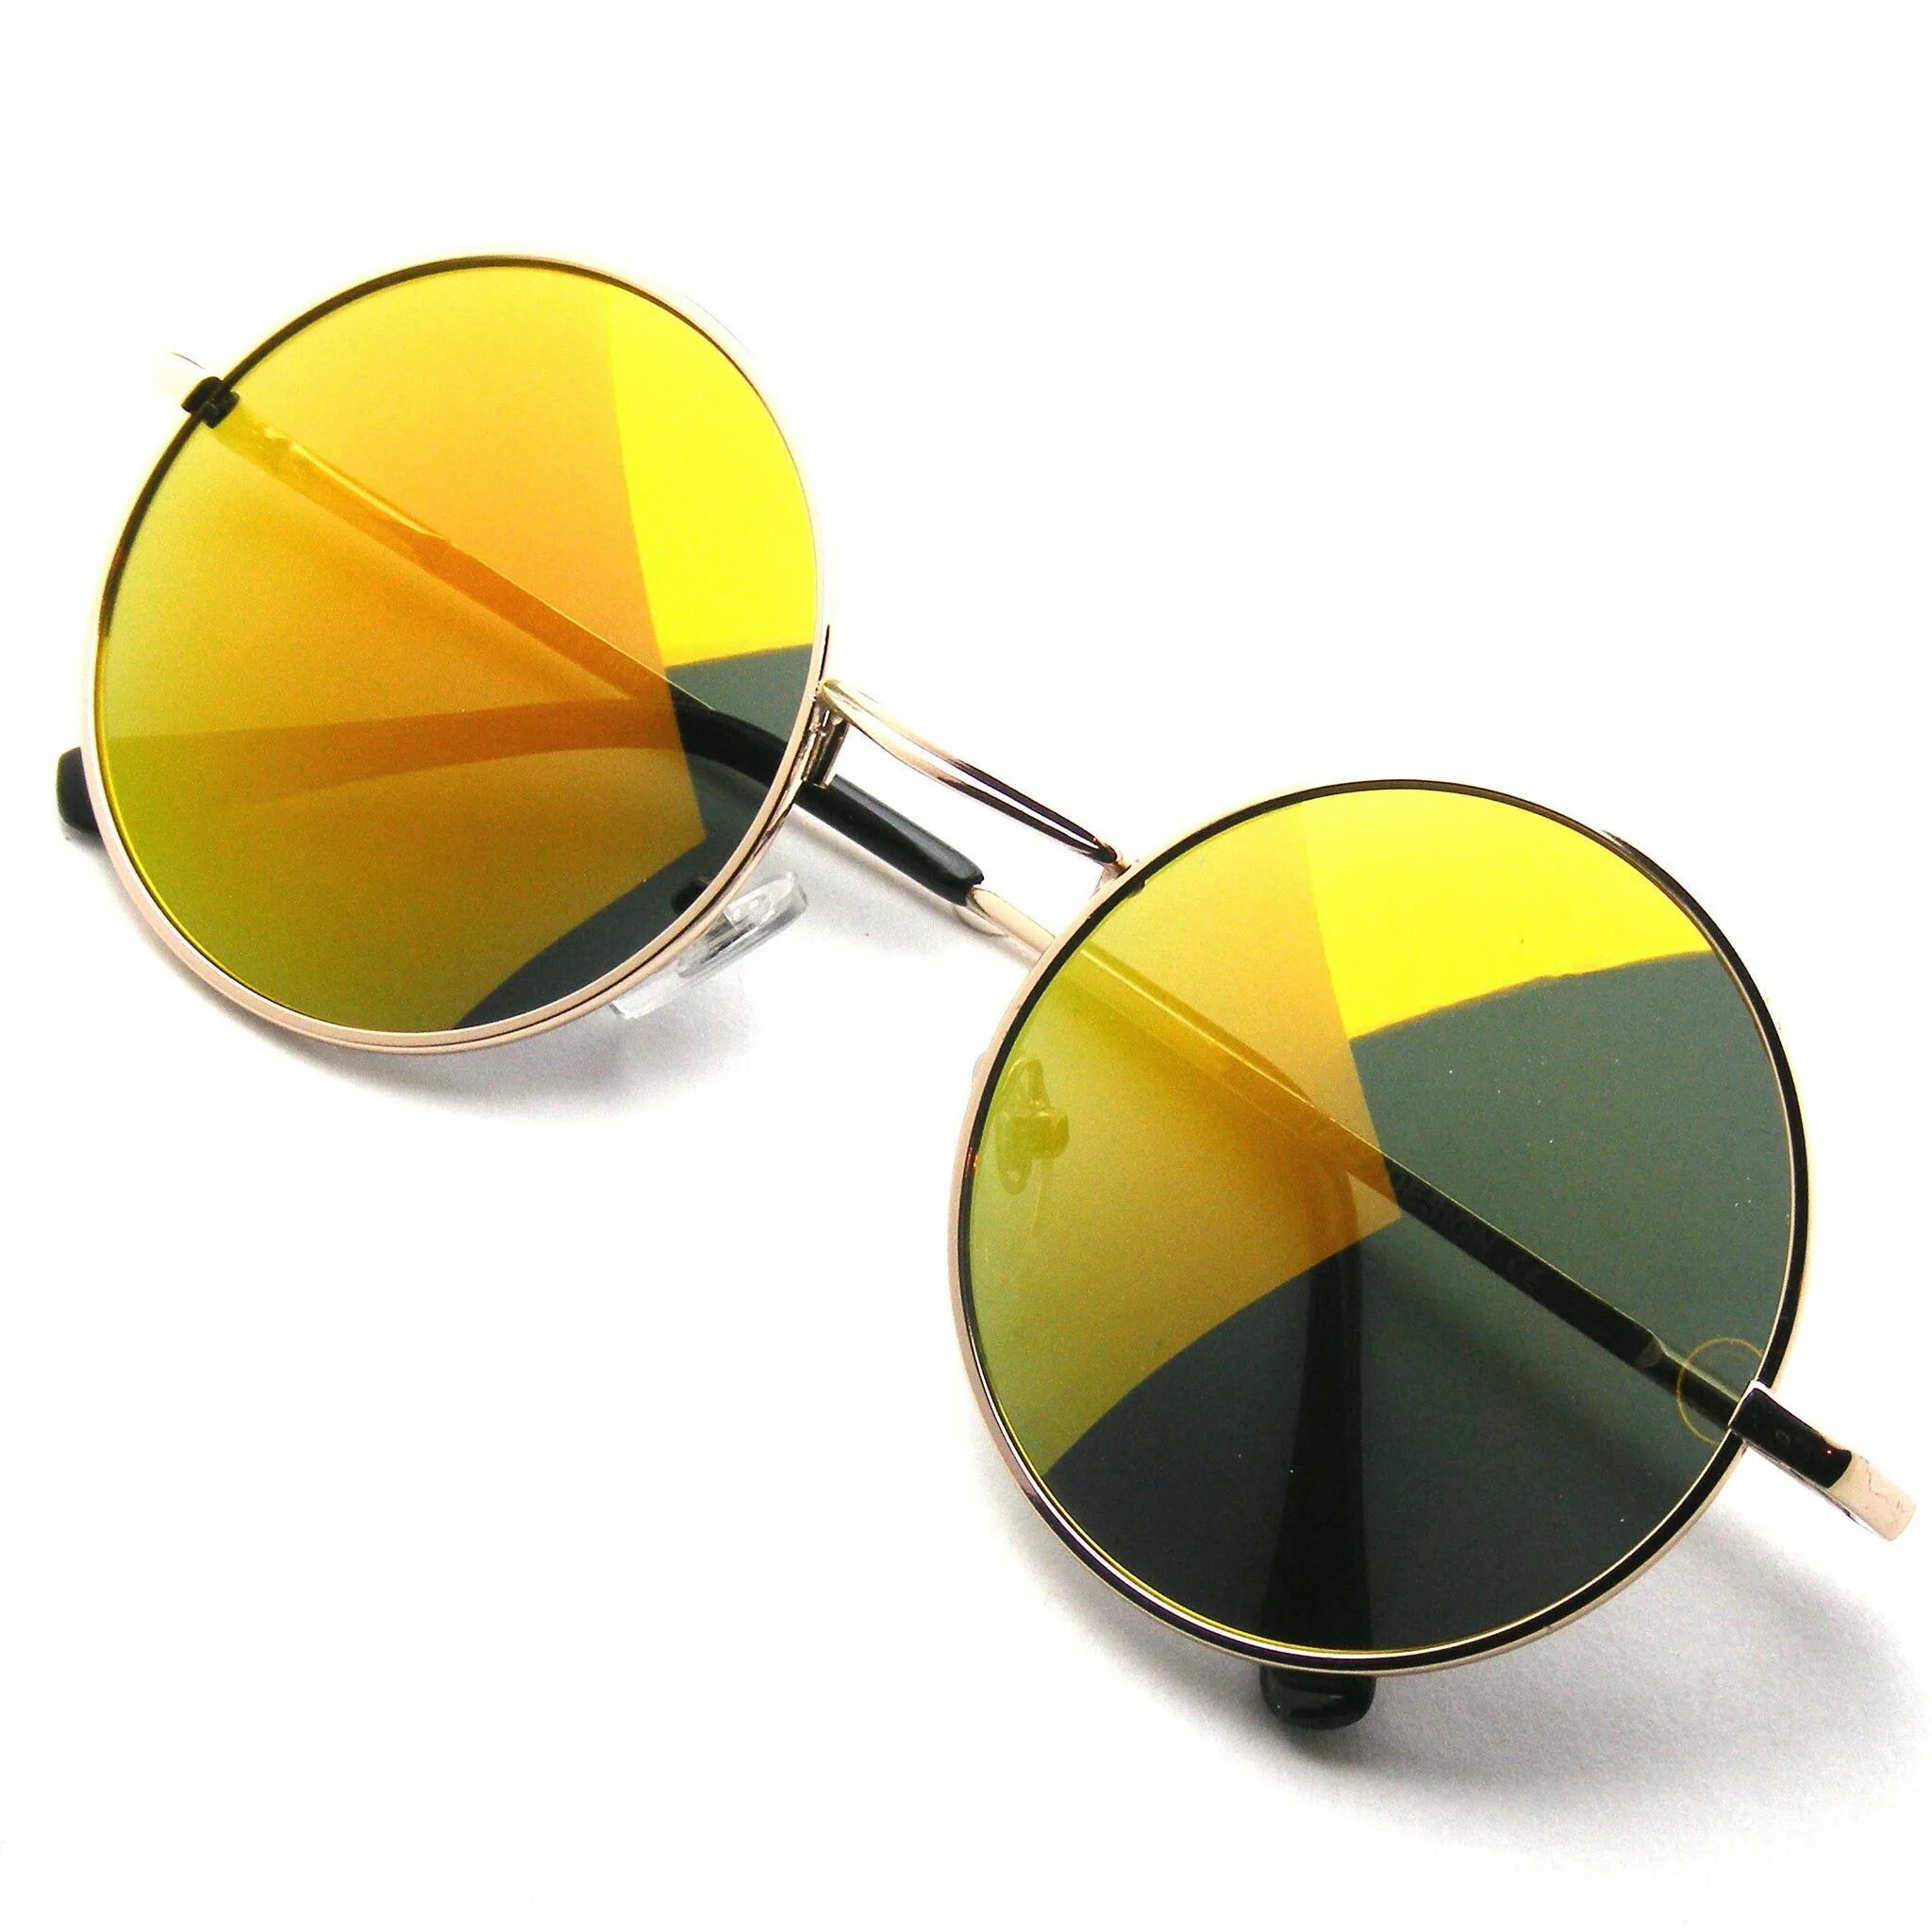 Round sunglasses. Круглые солнцезащитные очки. Круглые зеркальные очки. Круглые оцеи. Очки солнцезащитные круглые зеркальные.